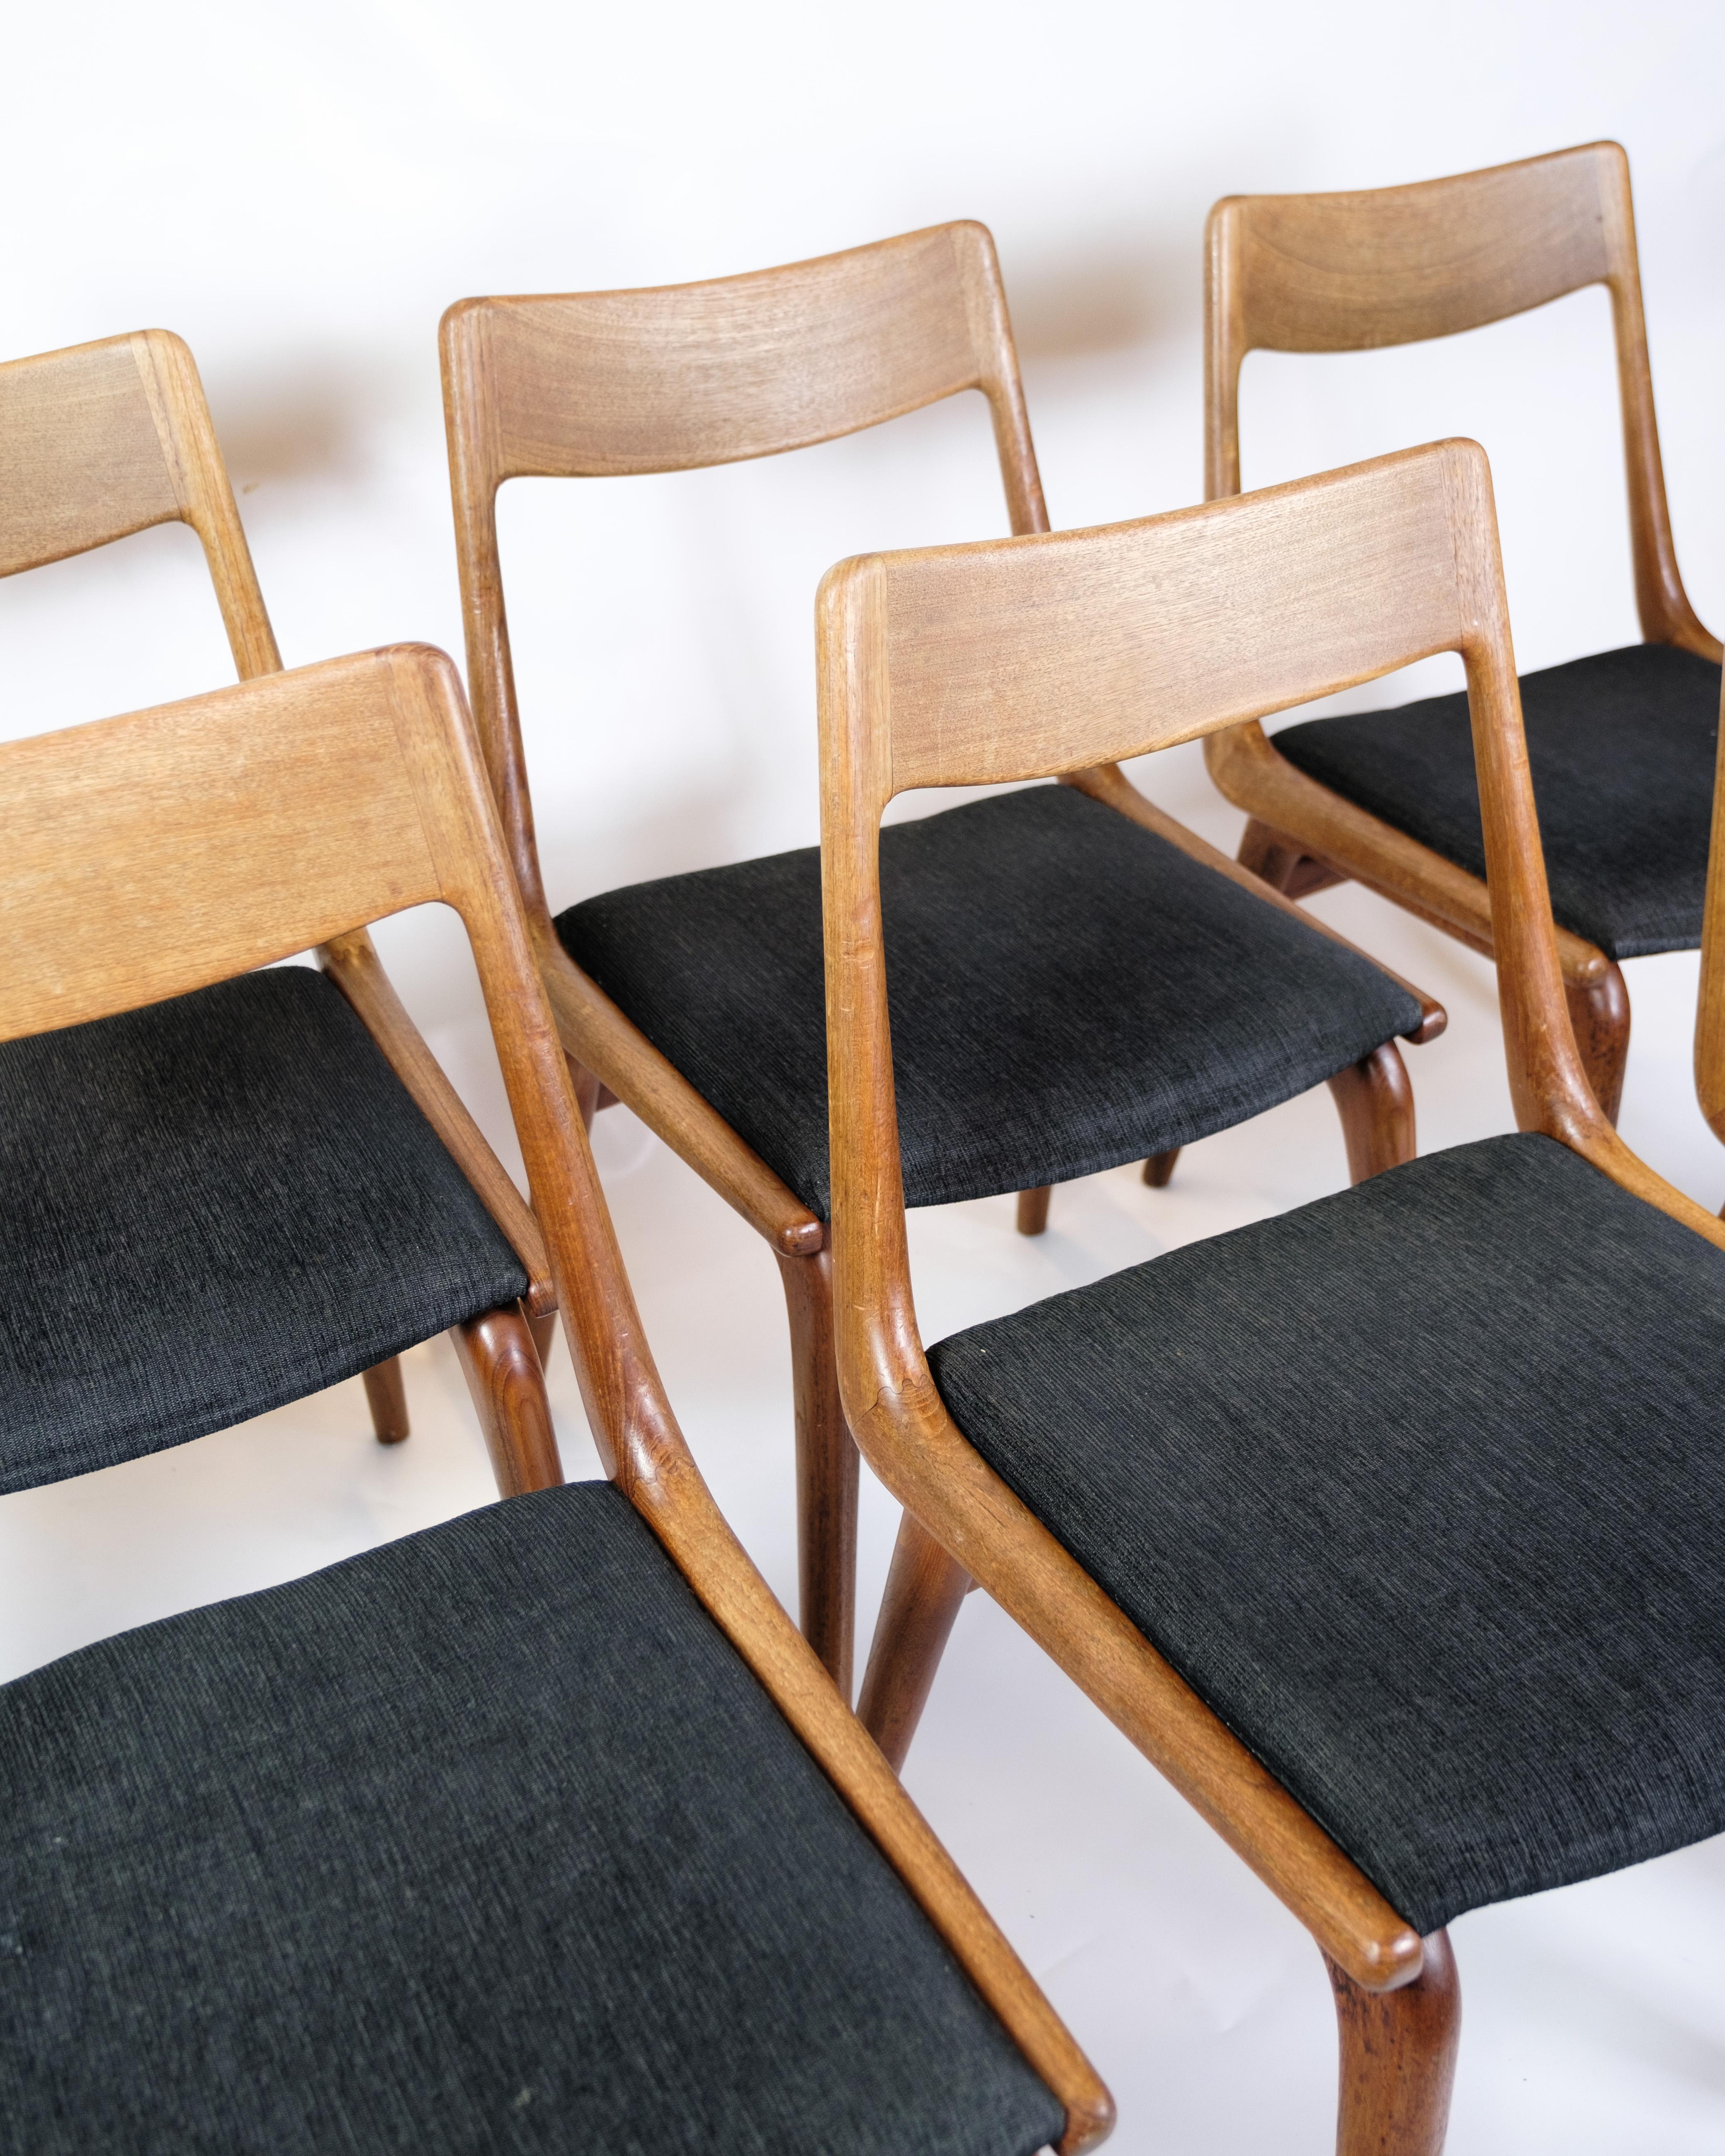 *PREIS BEINHALTET DIE VOLLSTÄNDIGE AUFARBEITUNG DER GESAMTEN HOLZARBEITEN AN ALLEN STÜHLEN*.

Das Set aus sechs Esszimmerstühlen, auch bekannt als Boomerang Chair, Modell 370, ist ein brillantes Beispiel für dänisches Möbeldesign aus den 1950er